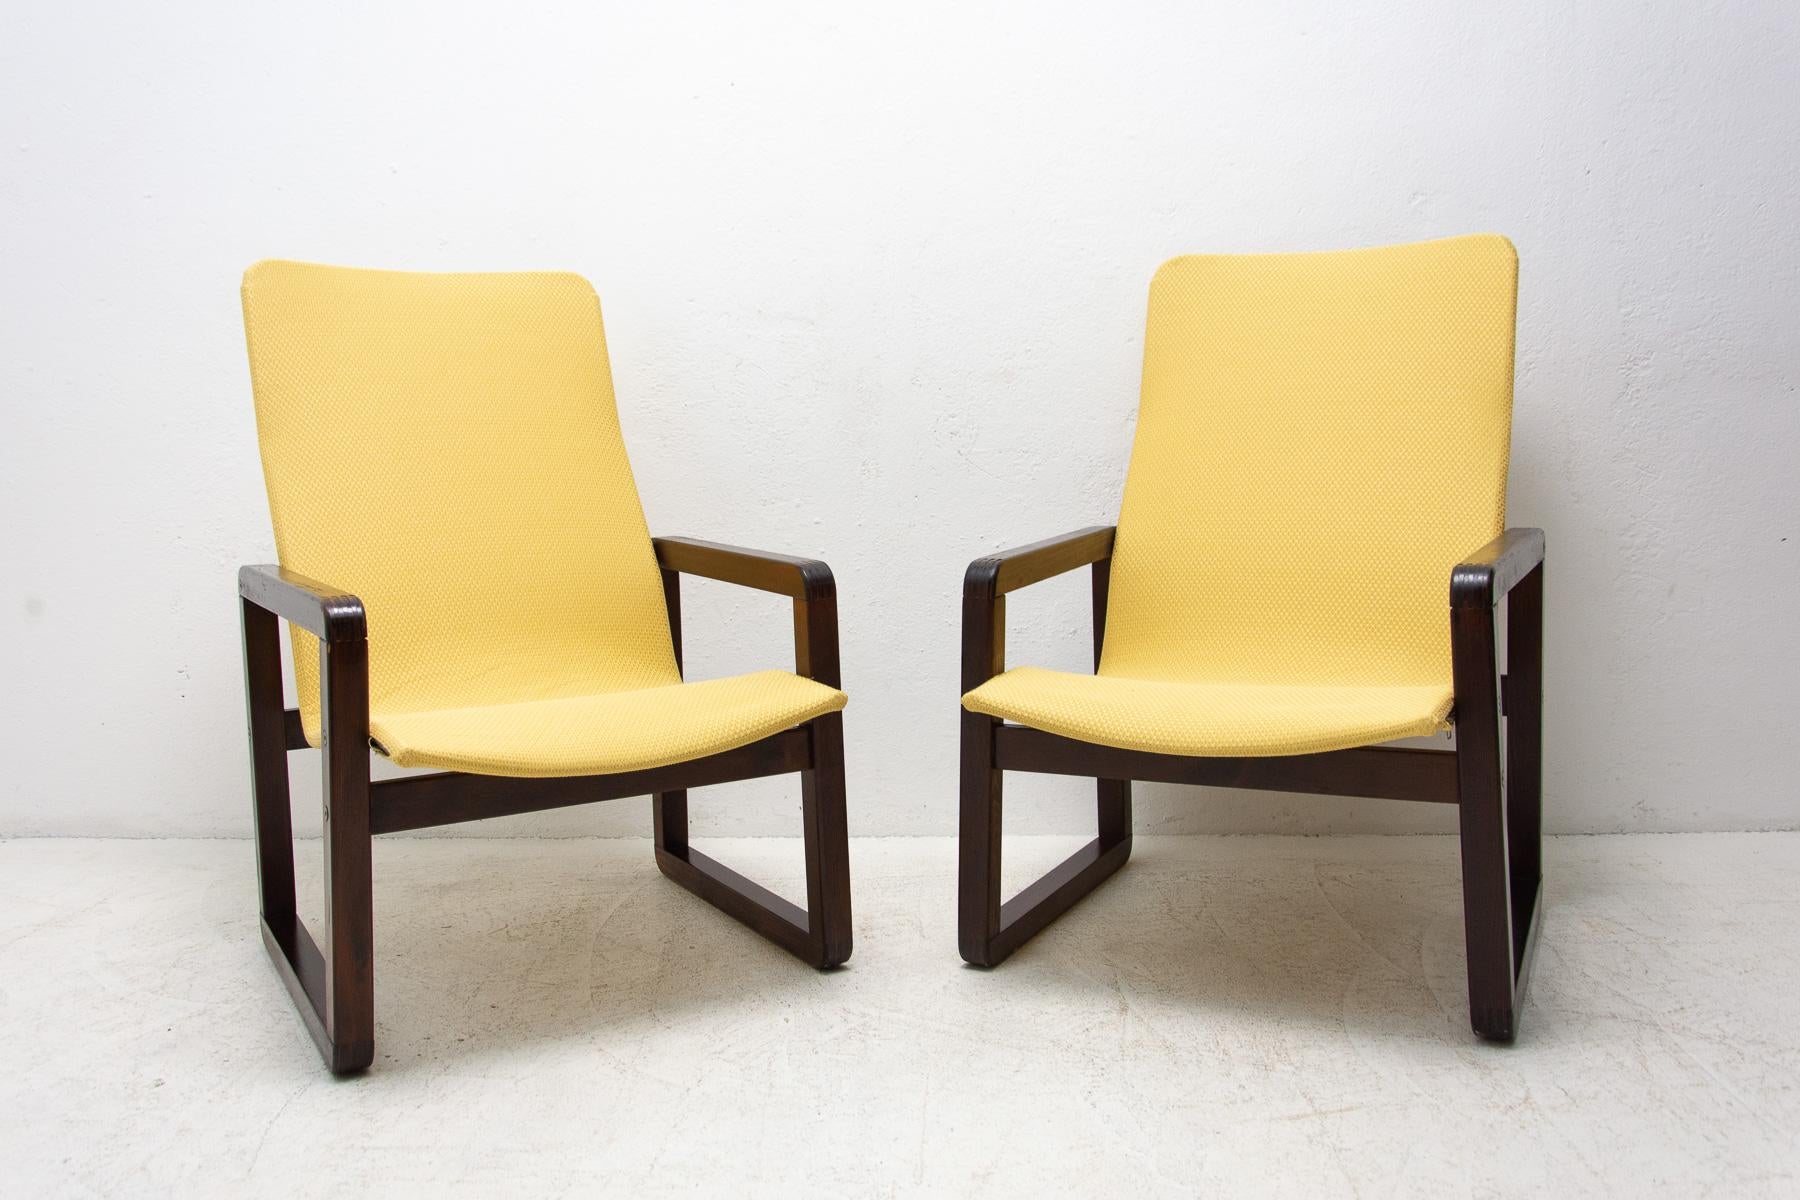 Vintage-Sessel im skandinavischen Stil, hergestellt in den 1980er Jahren in der ehemaligen Tschechoslowakei. Die Struktur ist aus Buchenholz, die Stühle sind mit einem neuen Stoff auf den Holzsitzen versehen. In sehr gutem Vintage-Zustand, mit